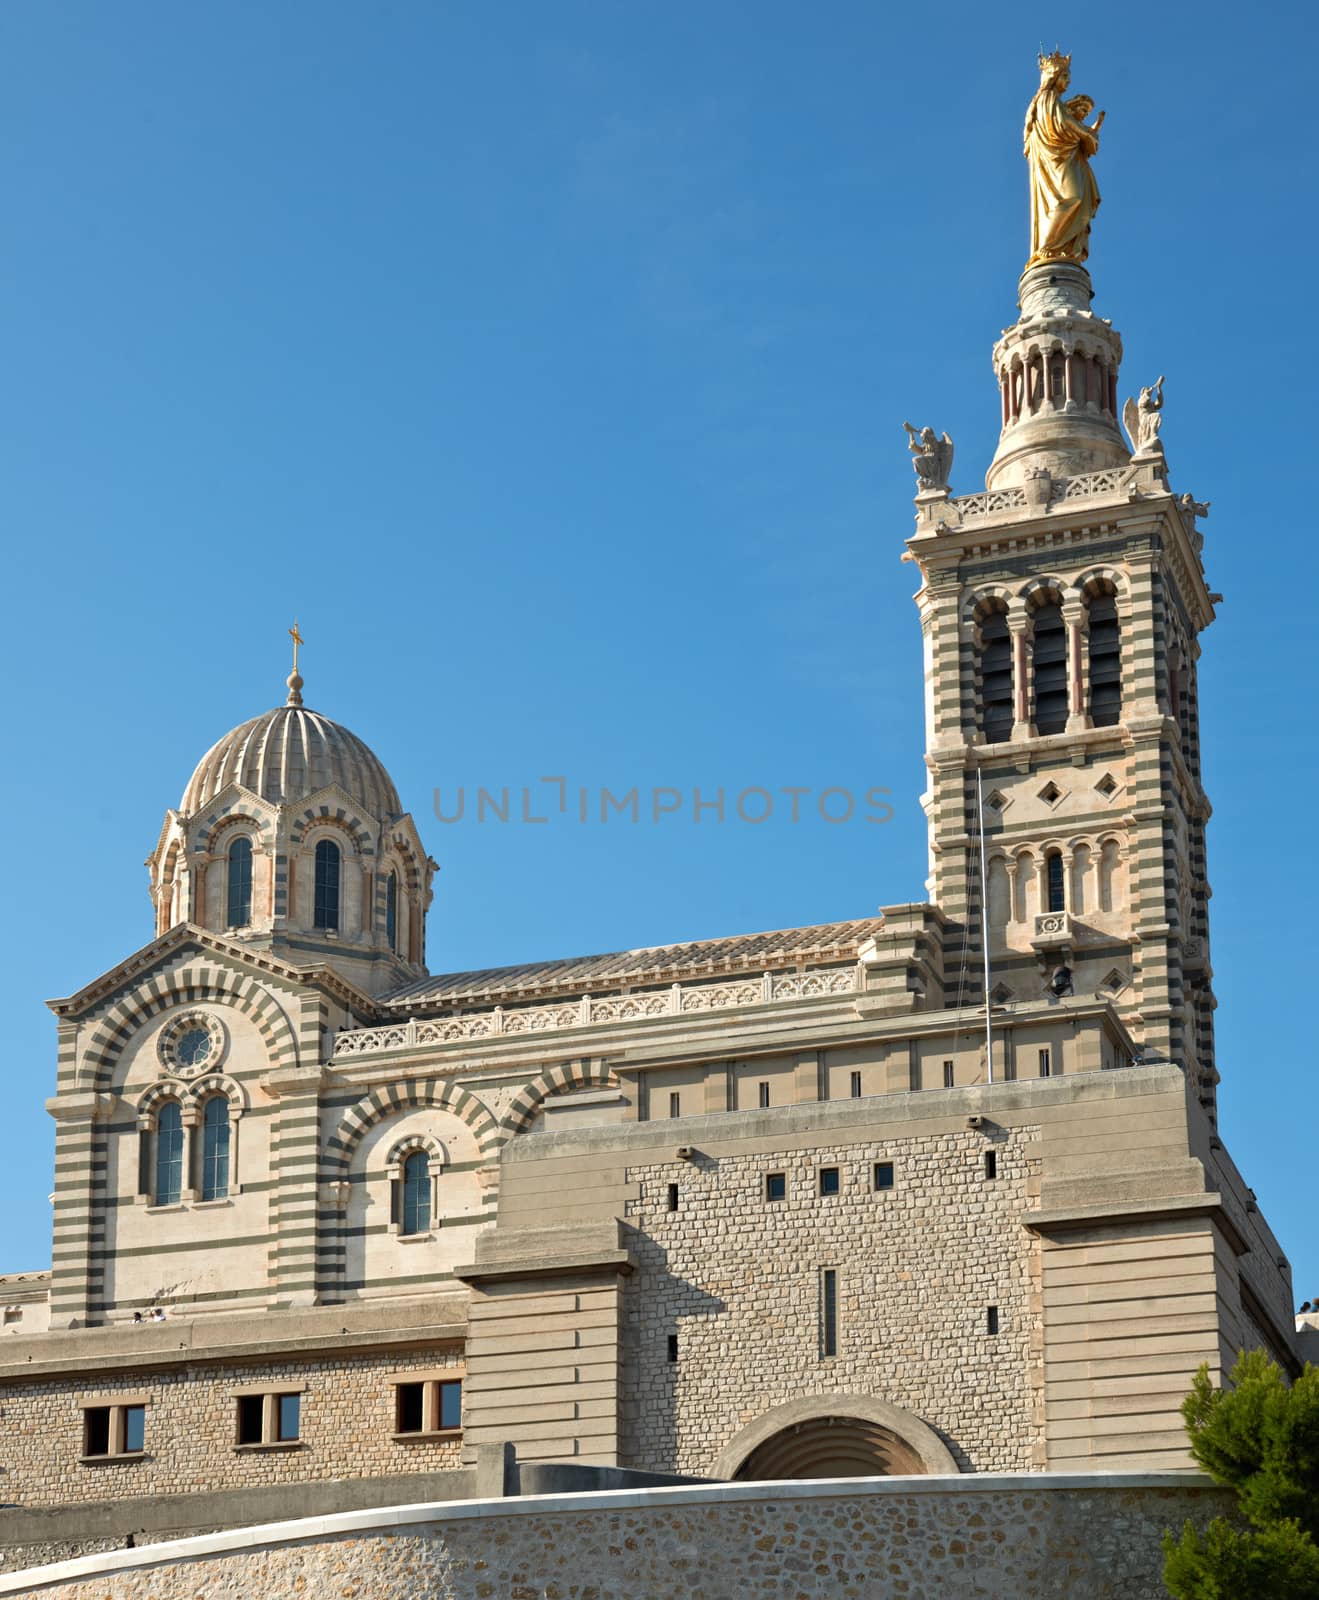 Basilica Notre dame de la garde in Marseille, France